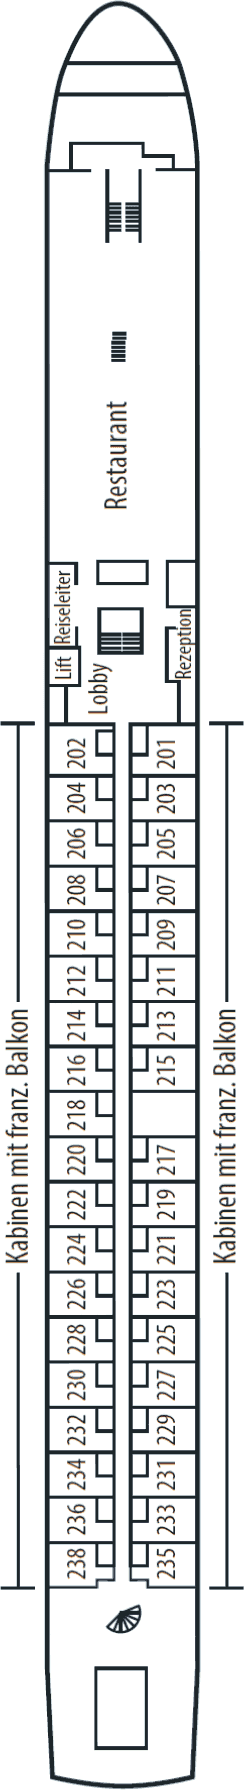 Mitteldeck (Deck Nr. 2)